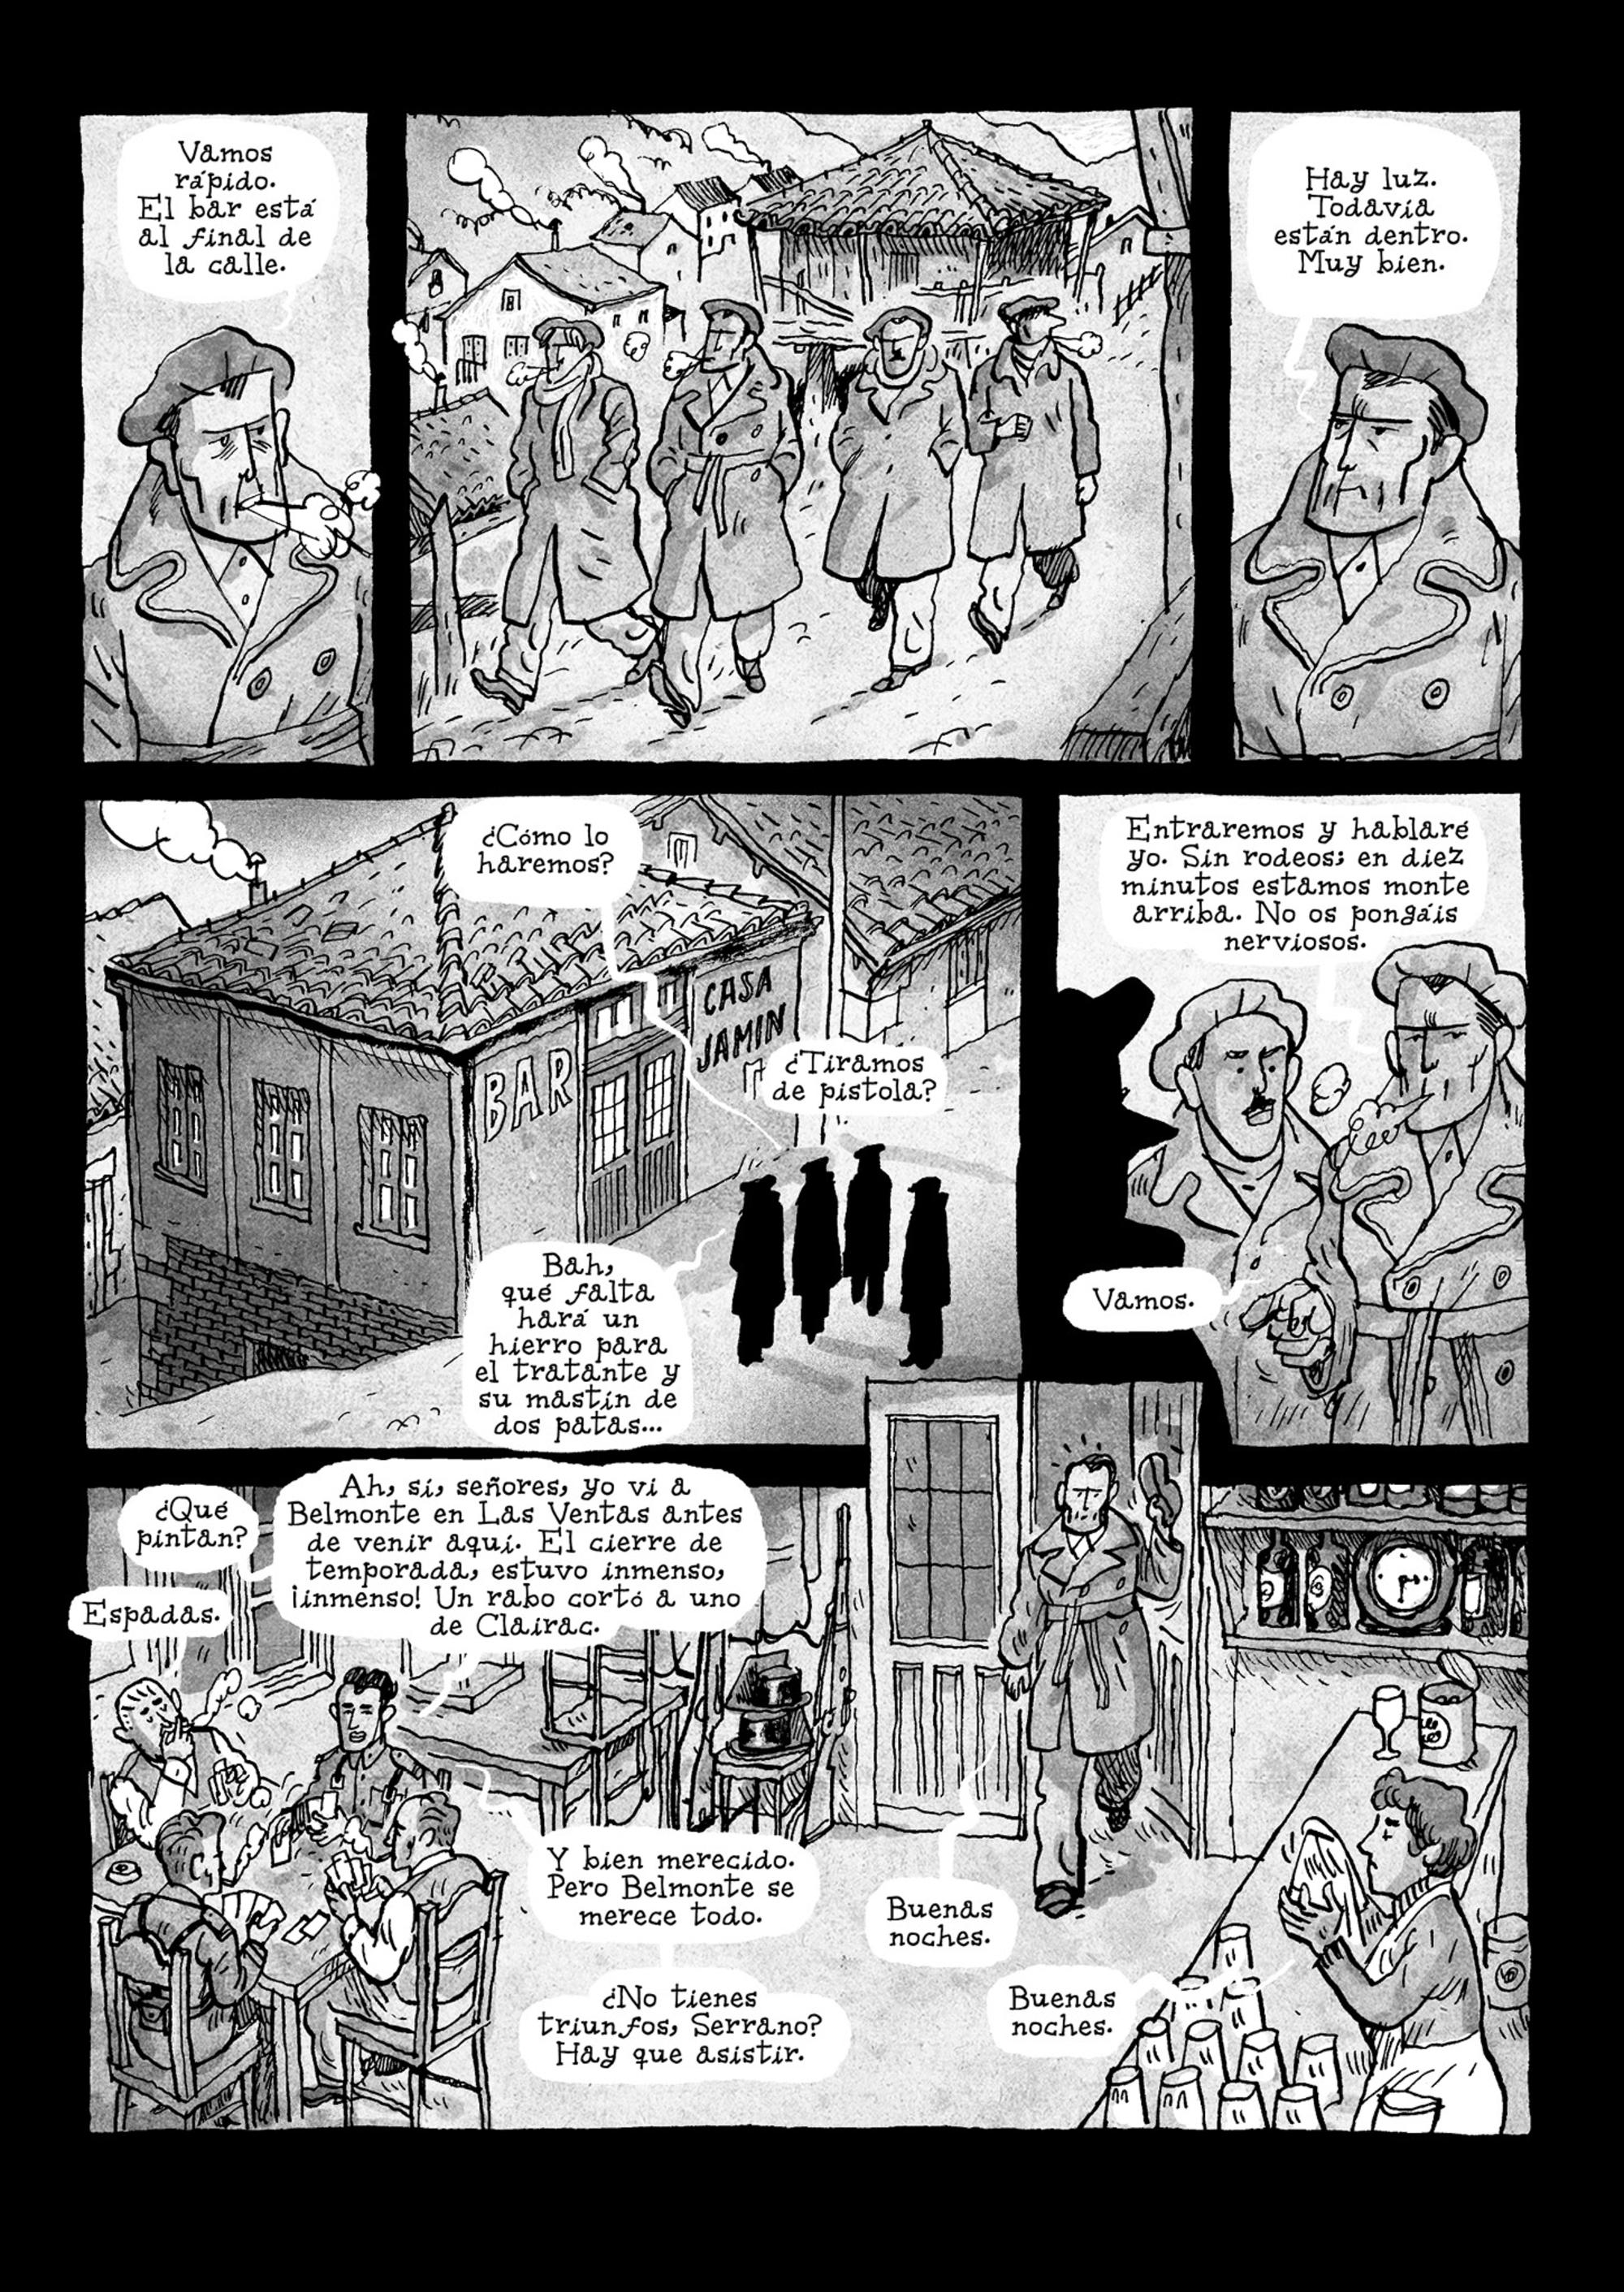 Página del cómic ‘La balada del norte’, de Alfonso Zapico